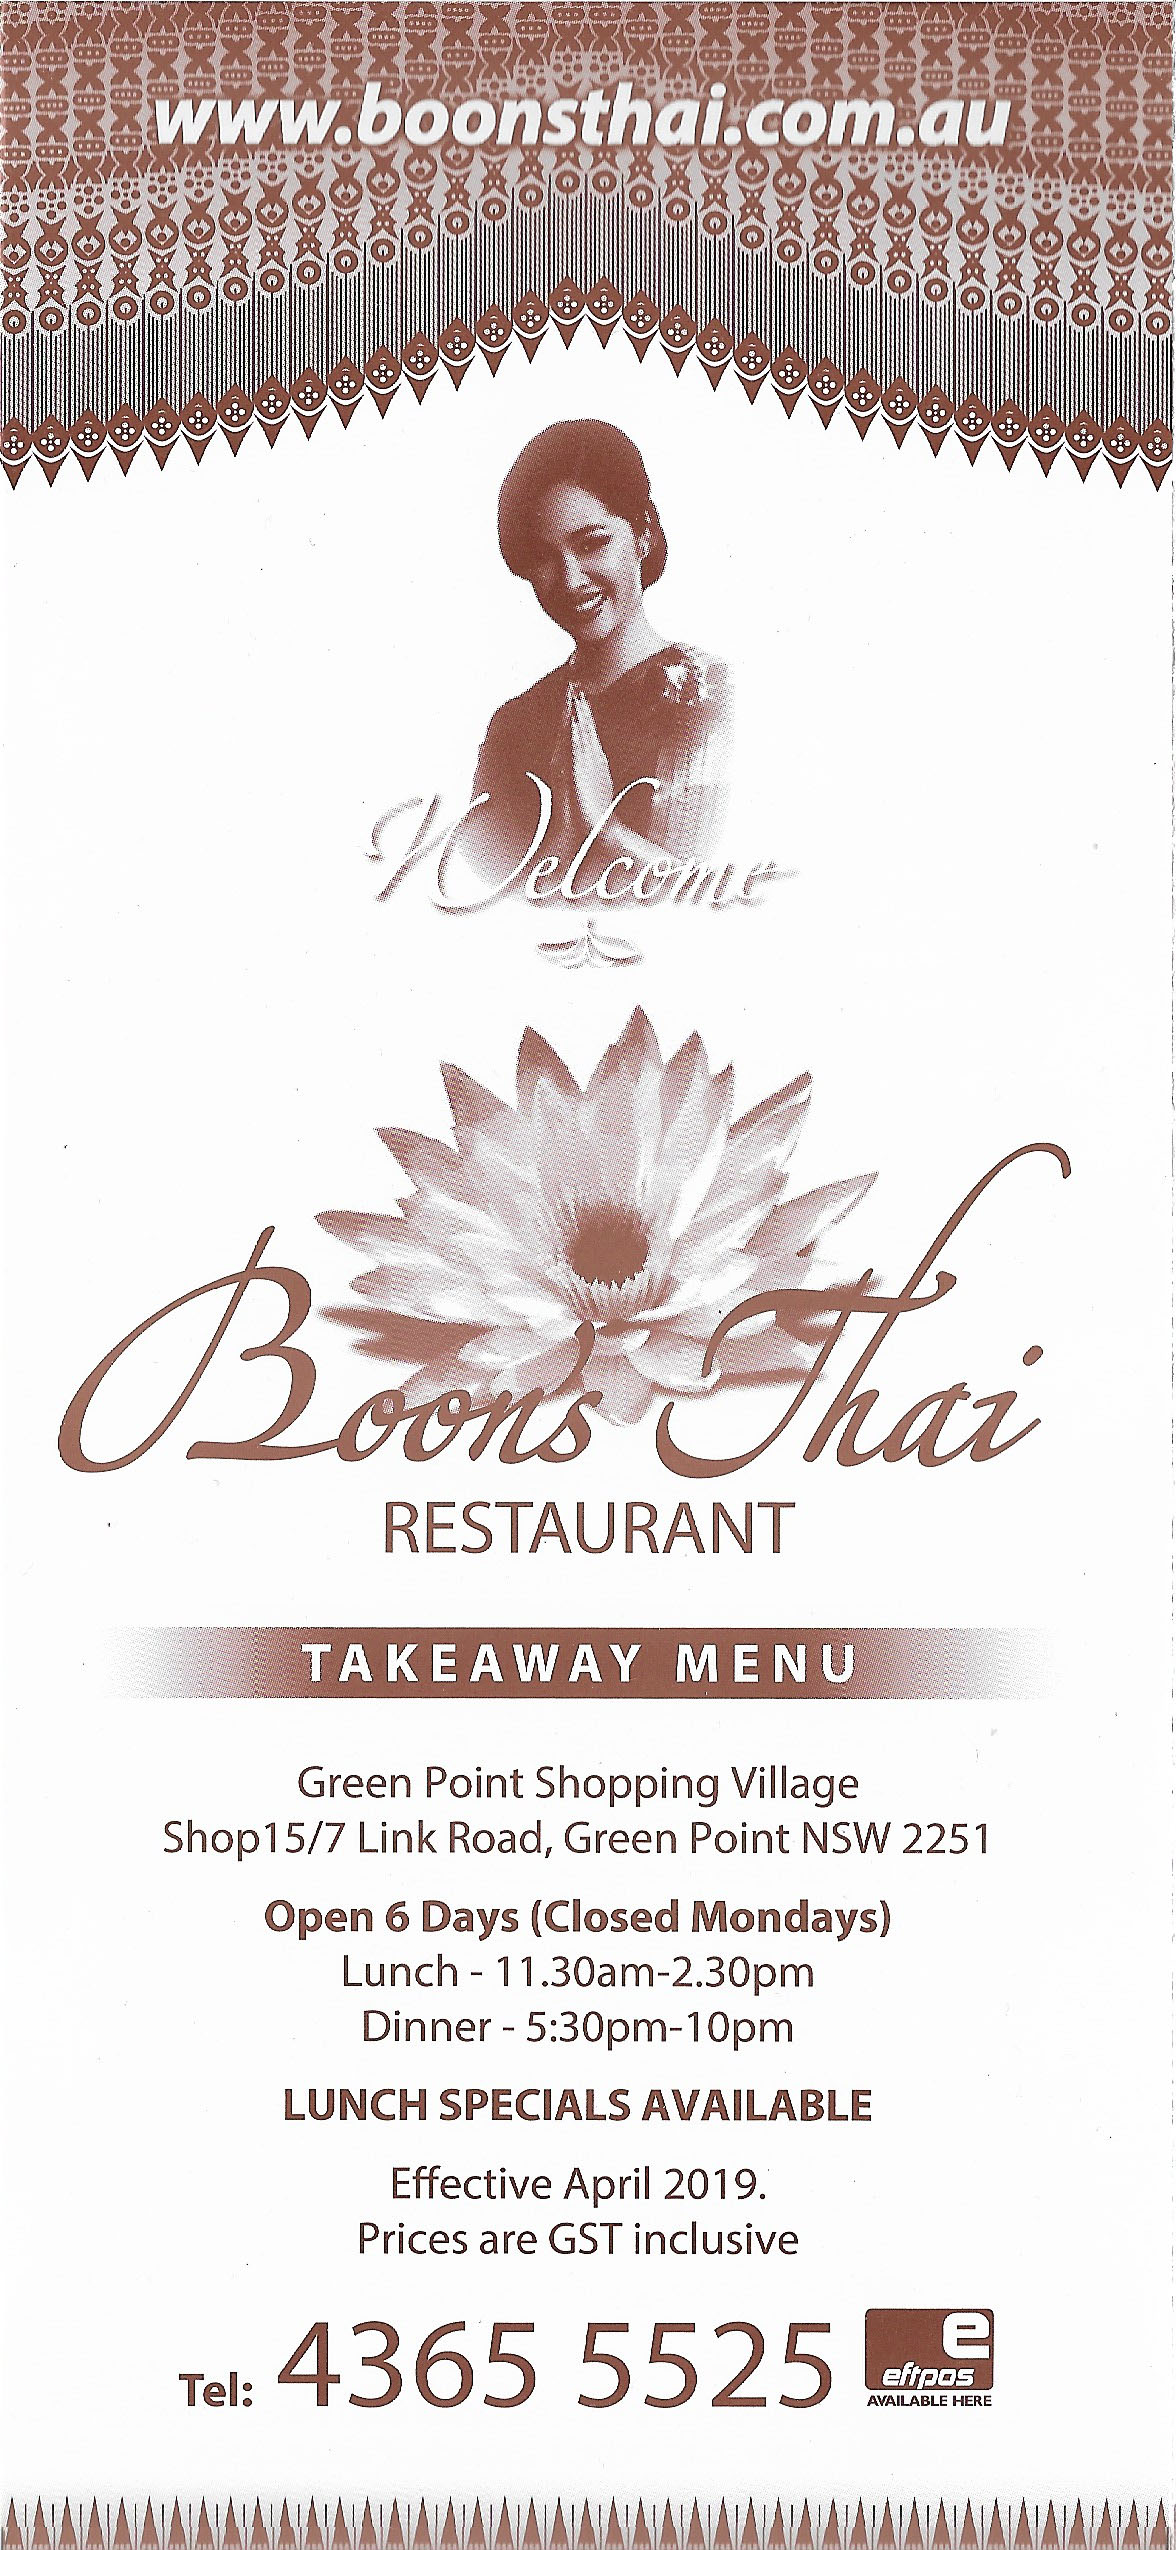 Boon's Thai Restaurant Green Point Central Coast - NSW | OBZ Online Business Zone